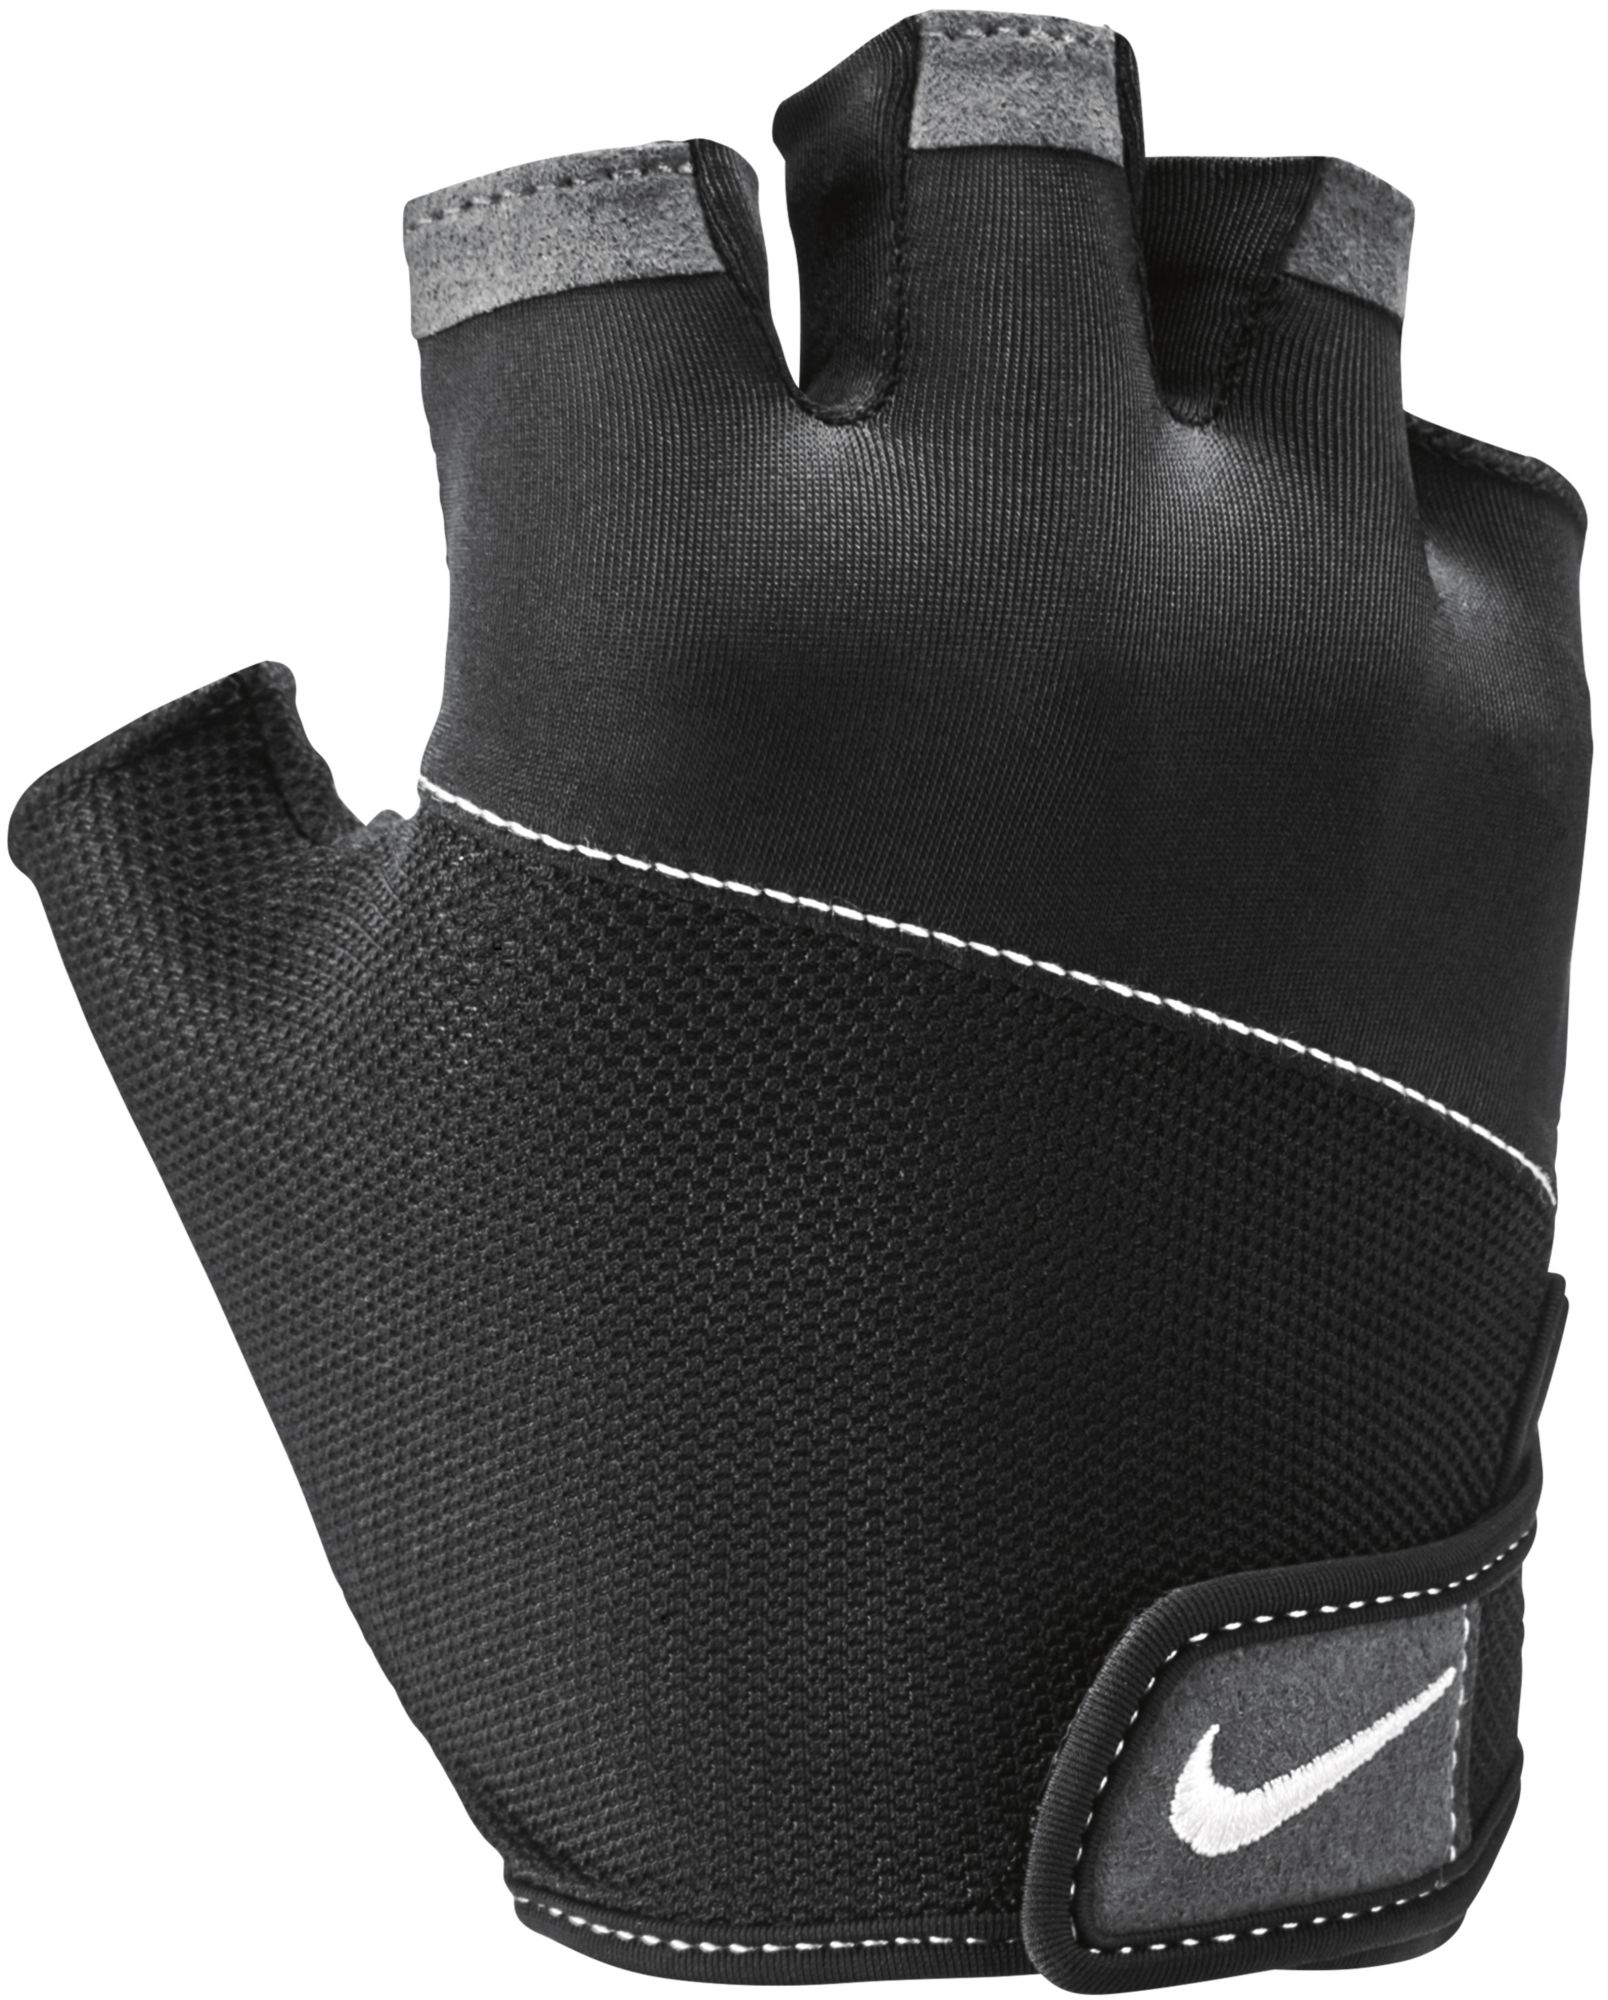 nike women's fitness gloves